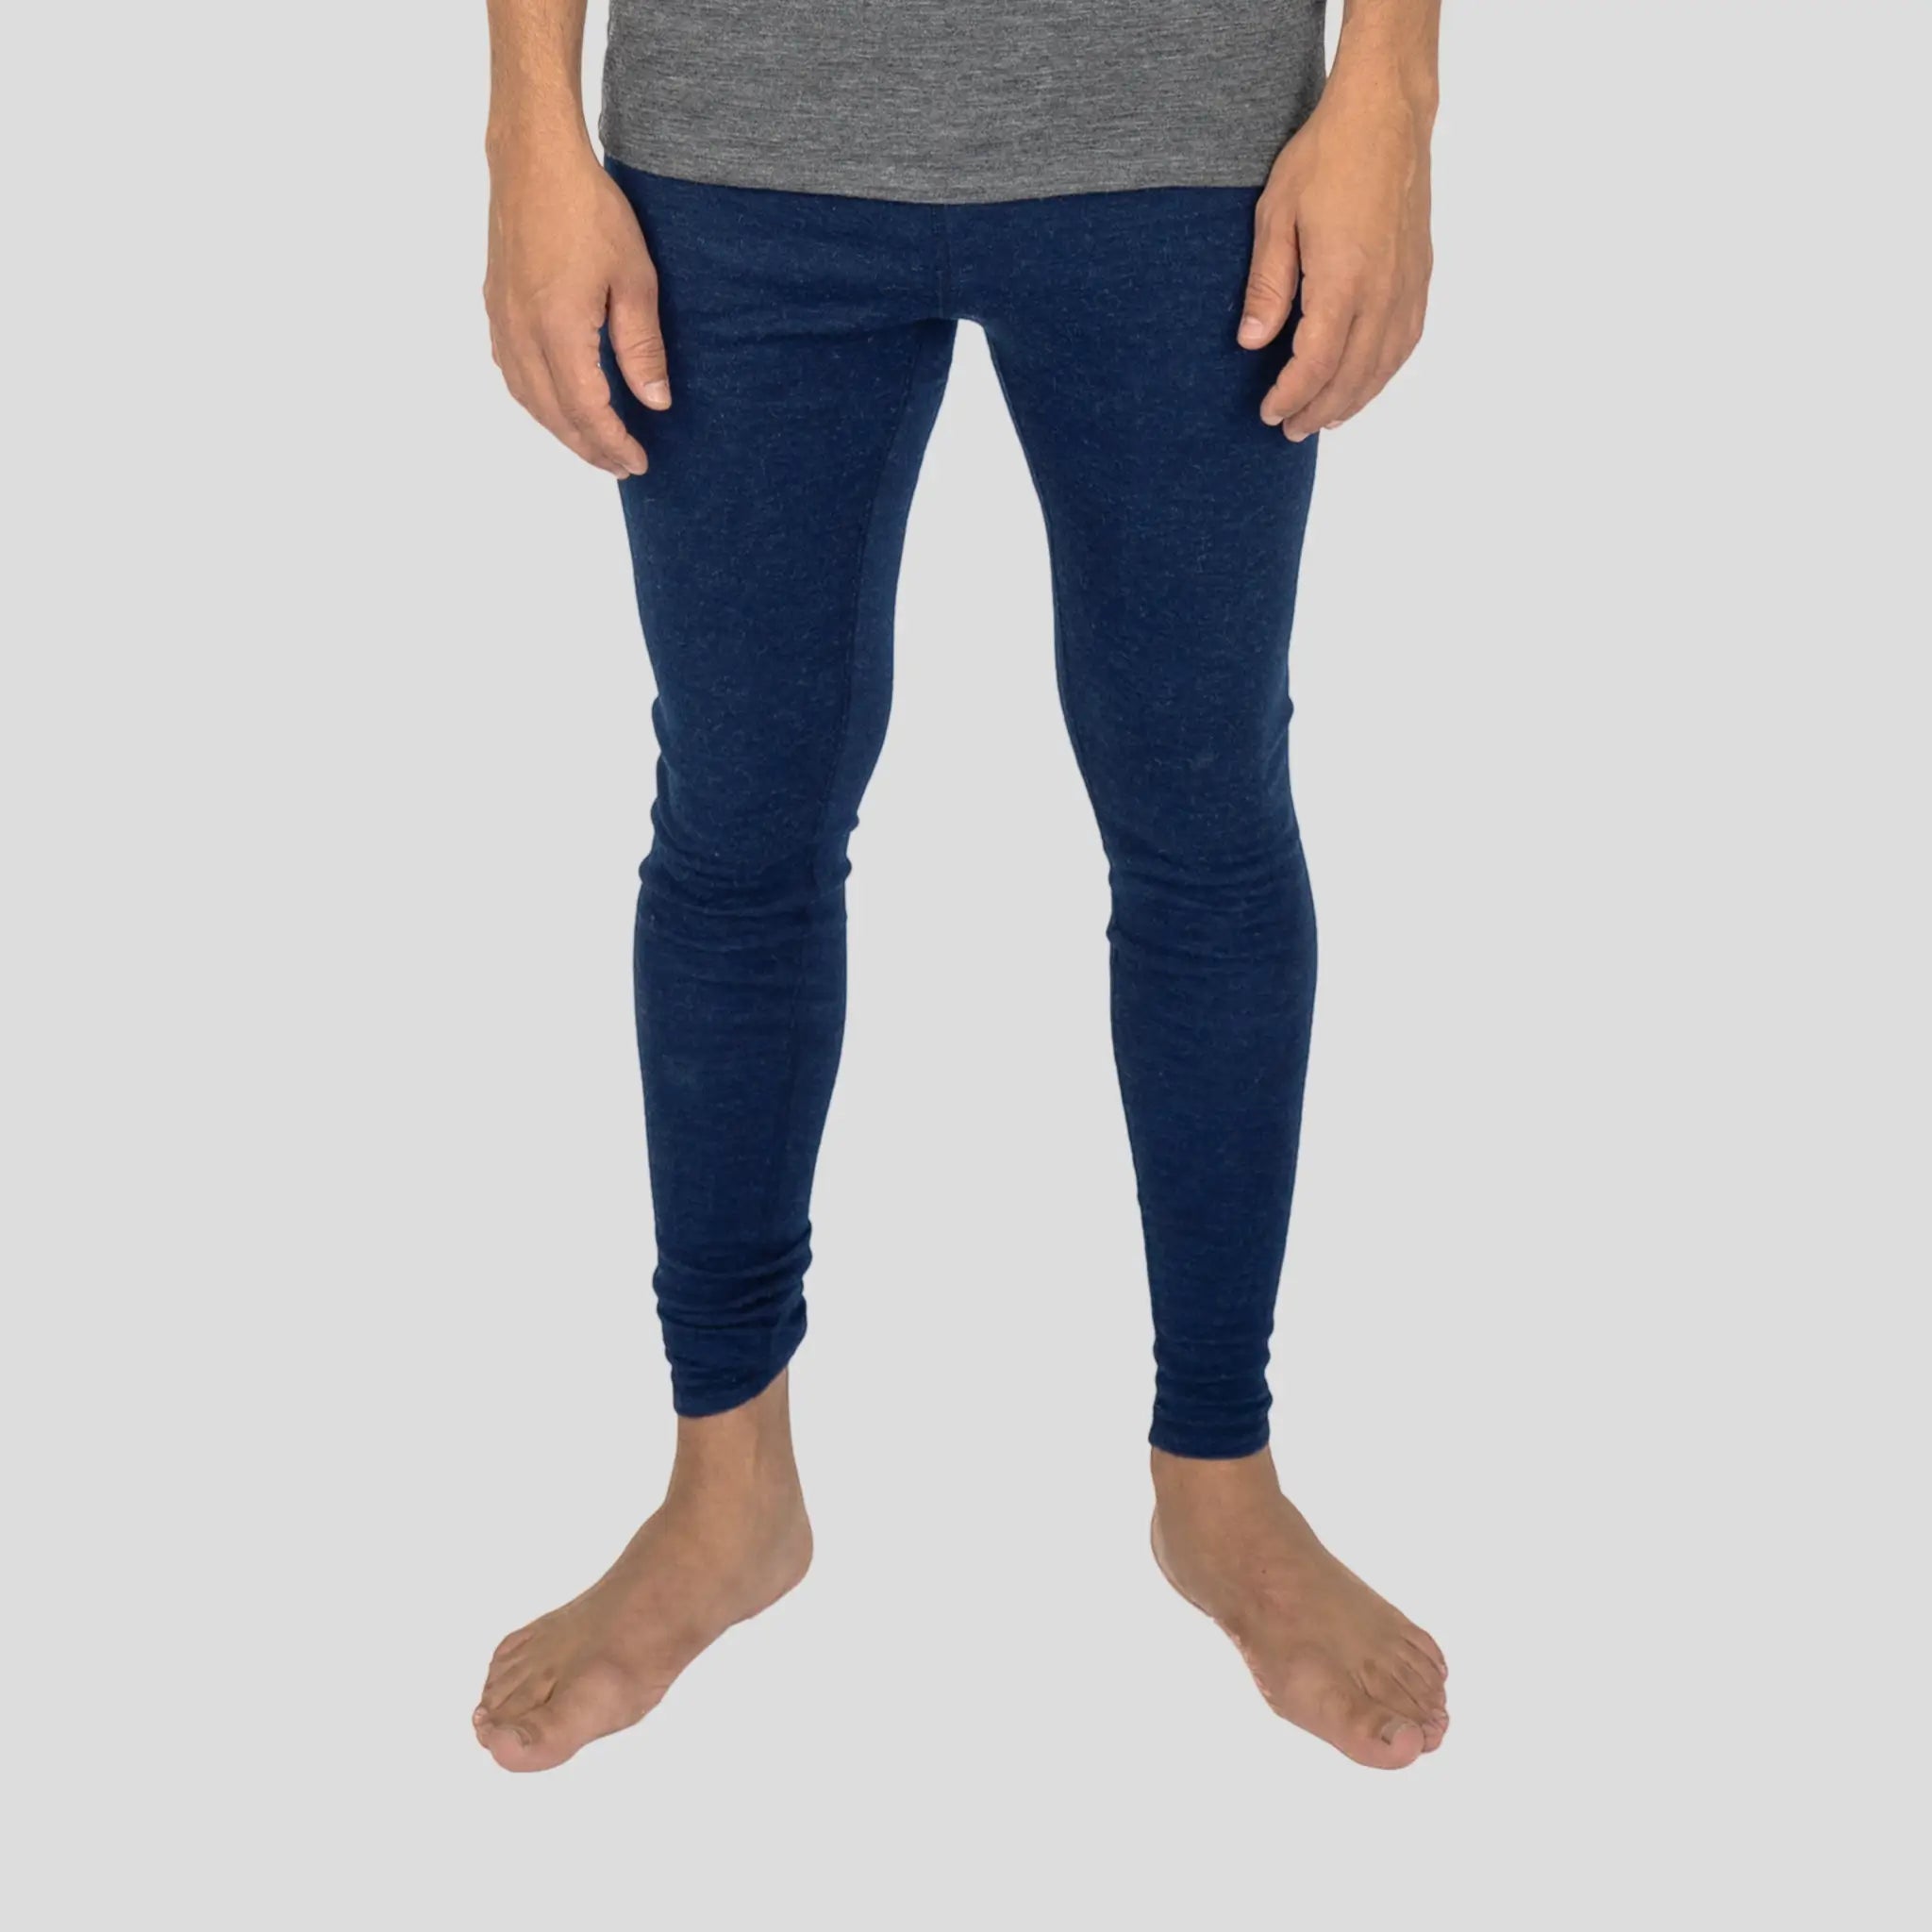 Blue Mens Leggings, Knitted Merino Man Tights, Soft Men's Wool Leggings,  Yoga Leggings Unisex, Natural Merino Home Leggings for Men -  Canada